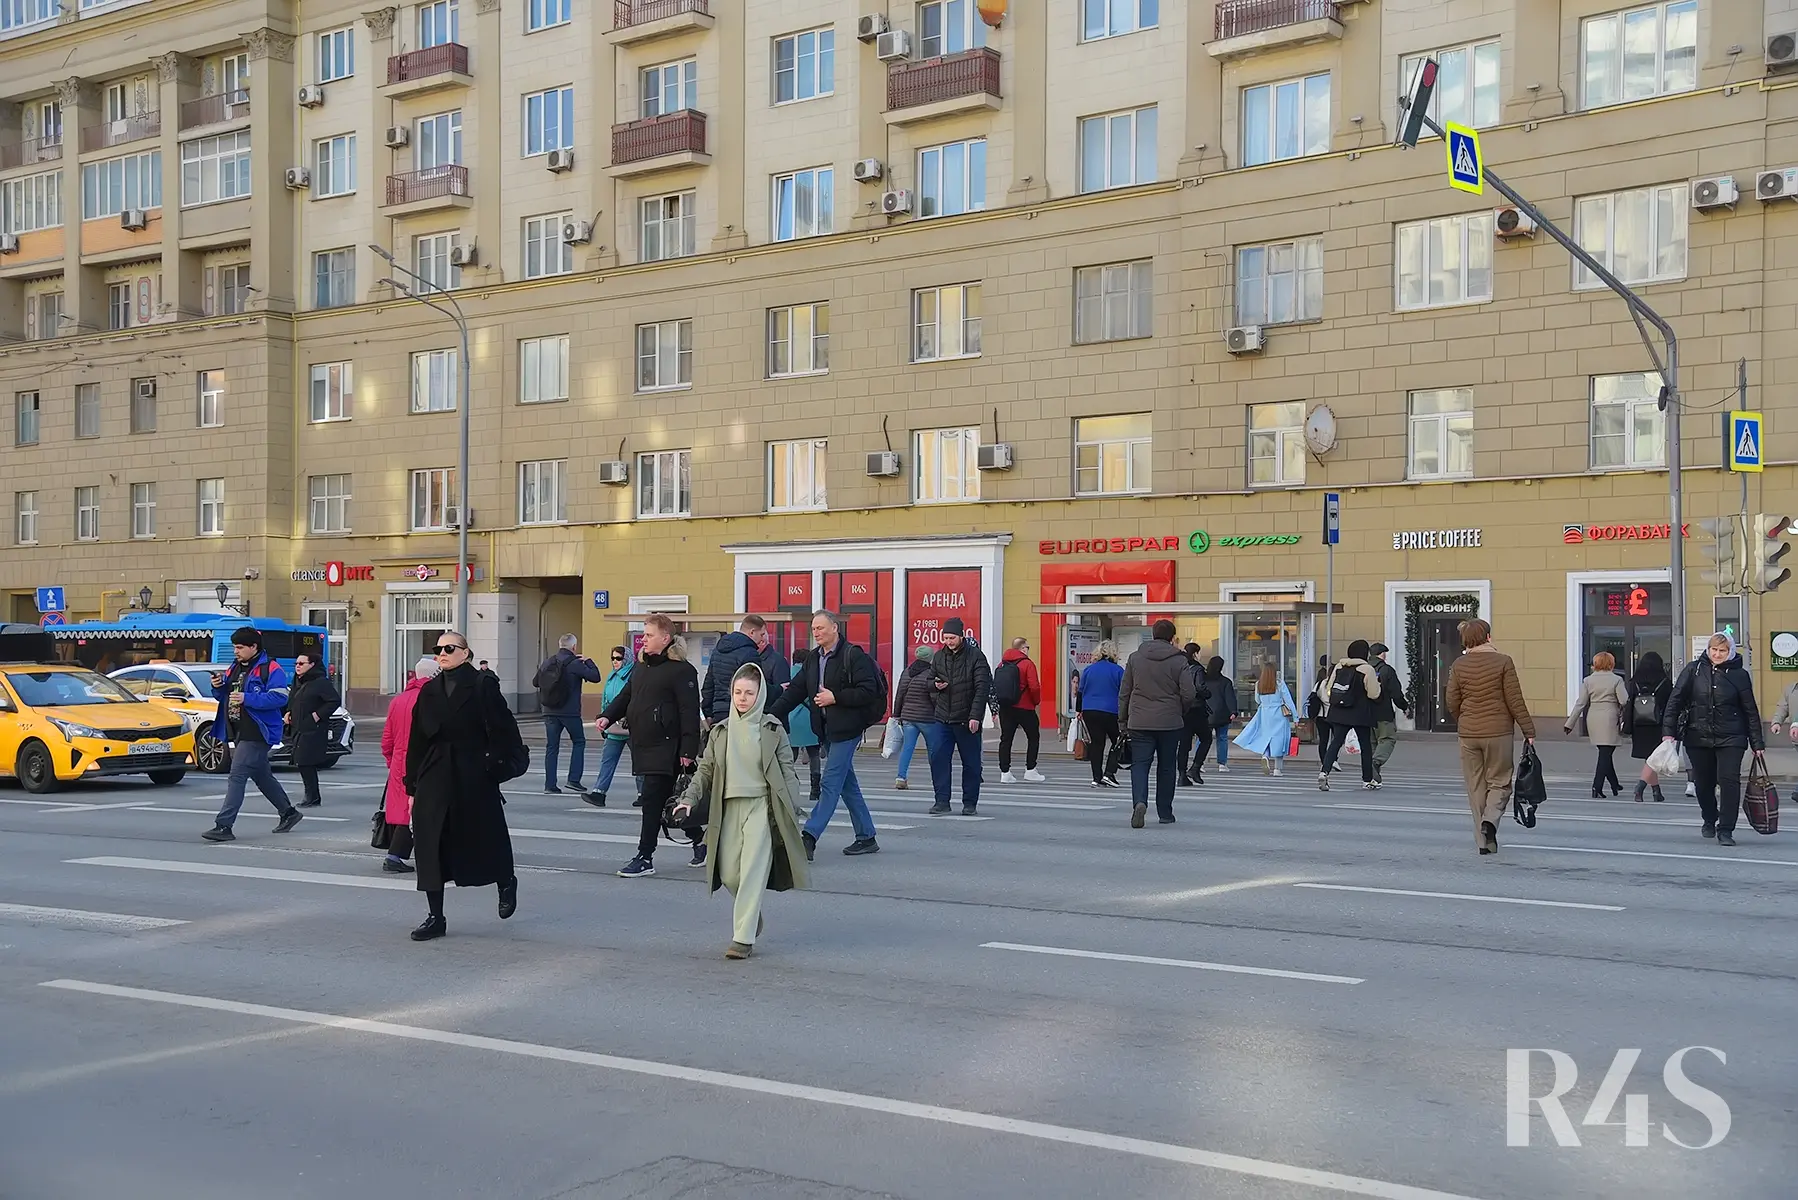 Продажа торговых помещений площадью 15.1 - 84.4 м2 в Москве:  проспект Мира, 48 R4S | Realty4Sale